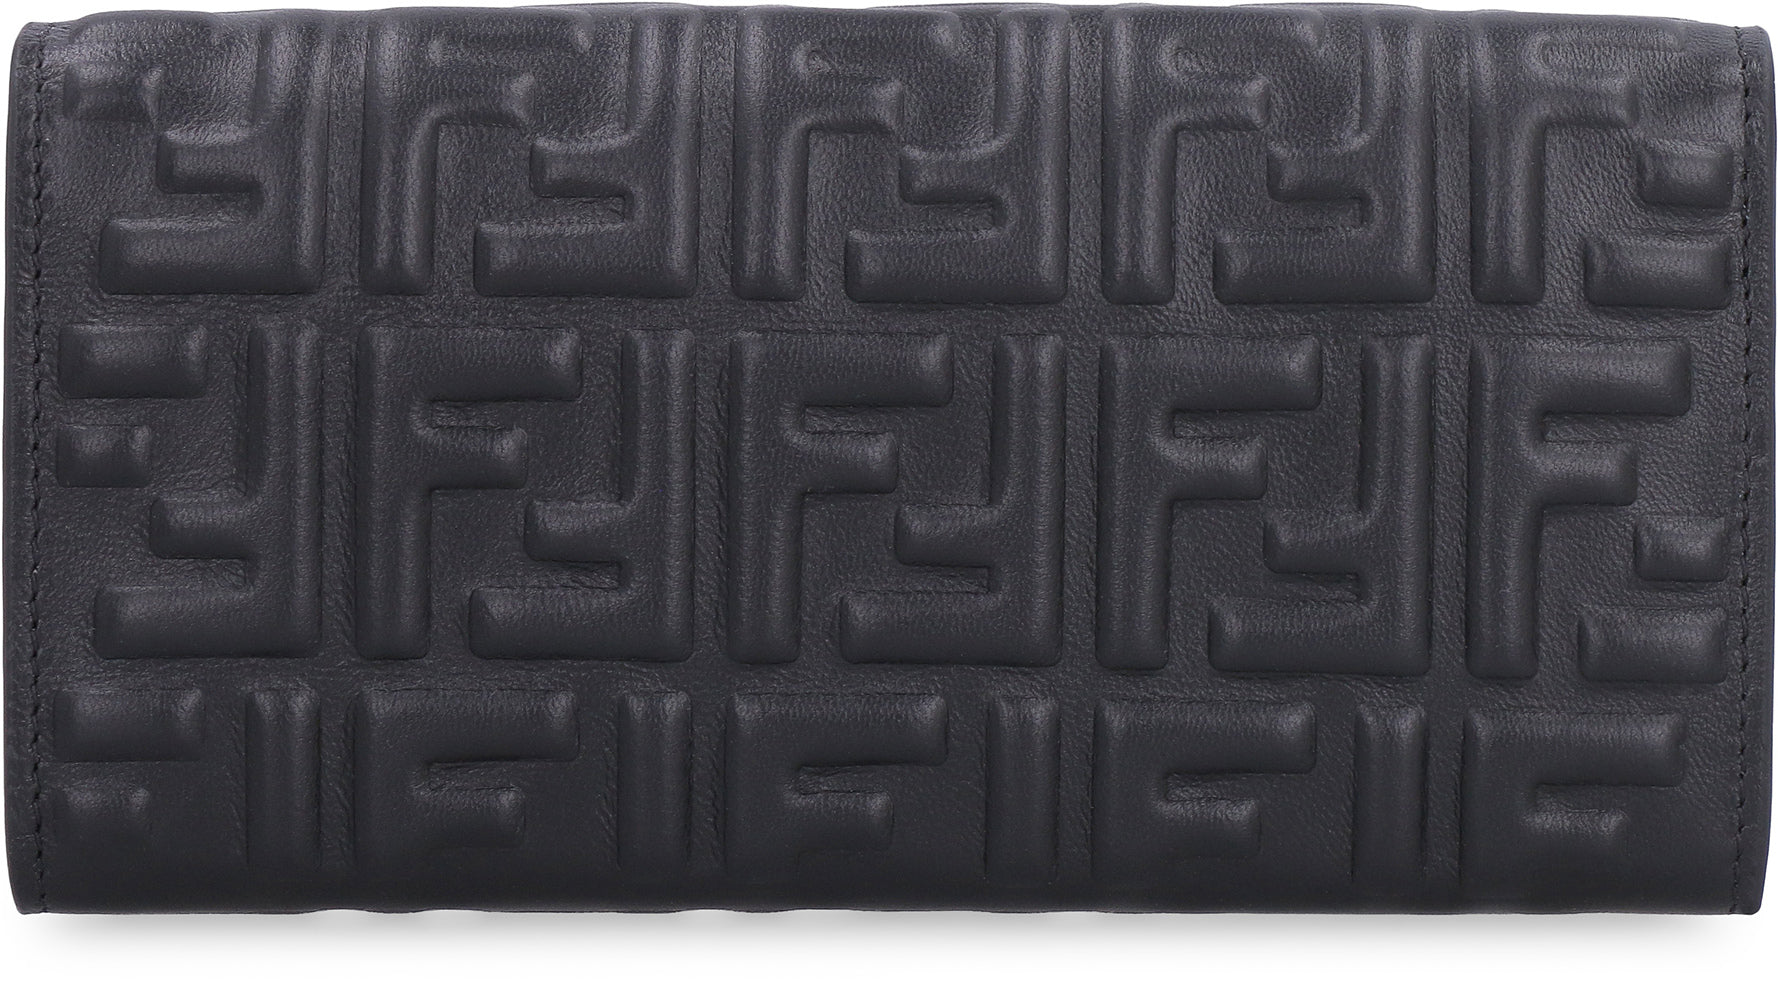 Fendi Baguette Continental Leather Wallet